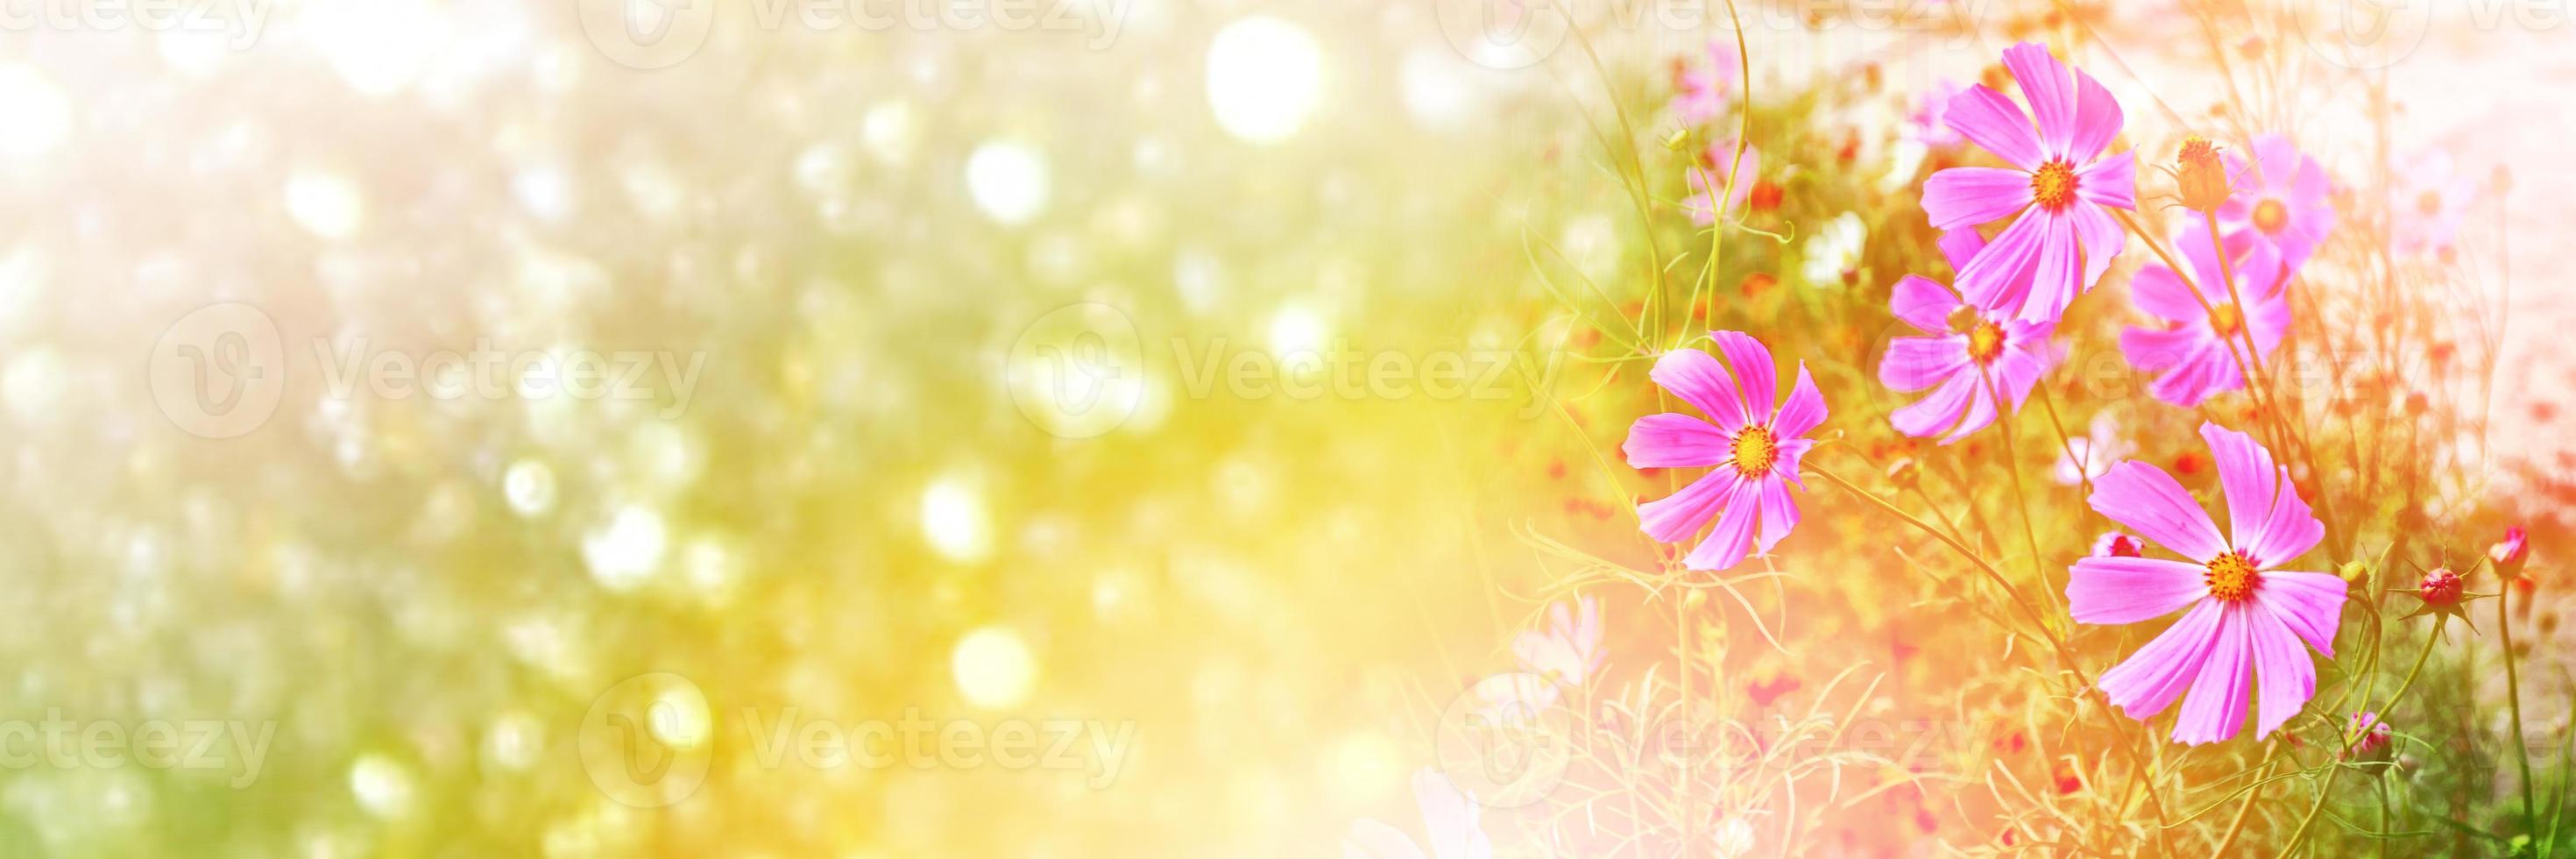 flores de cosmos de colores sobre un fondo de paisaje de verano. foto